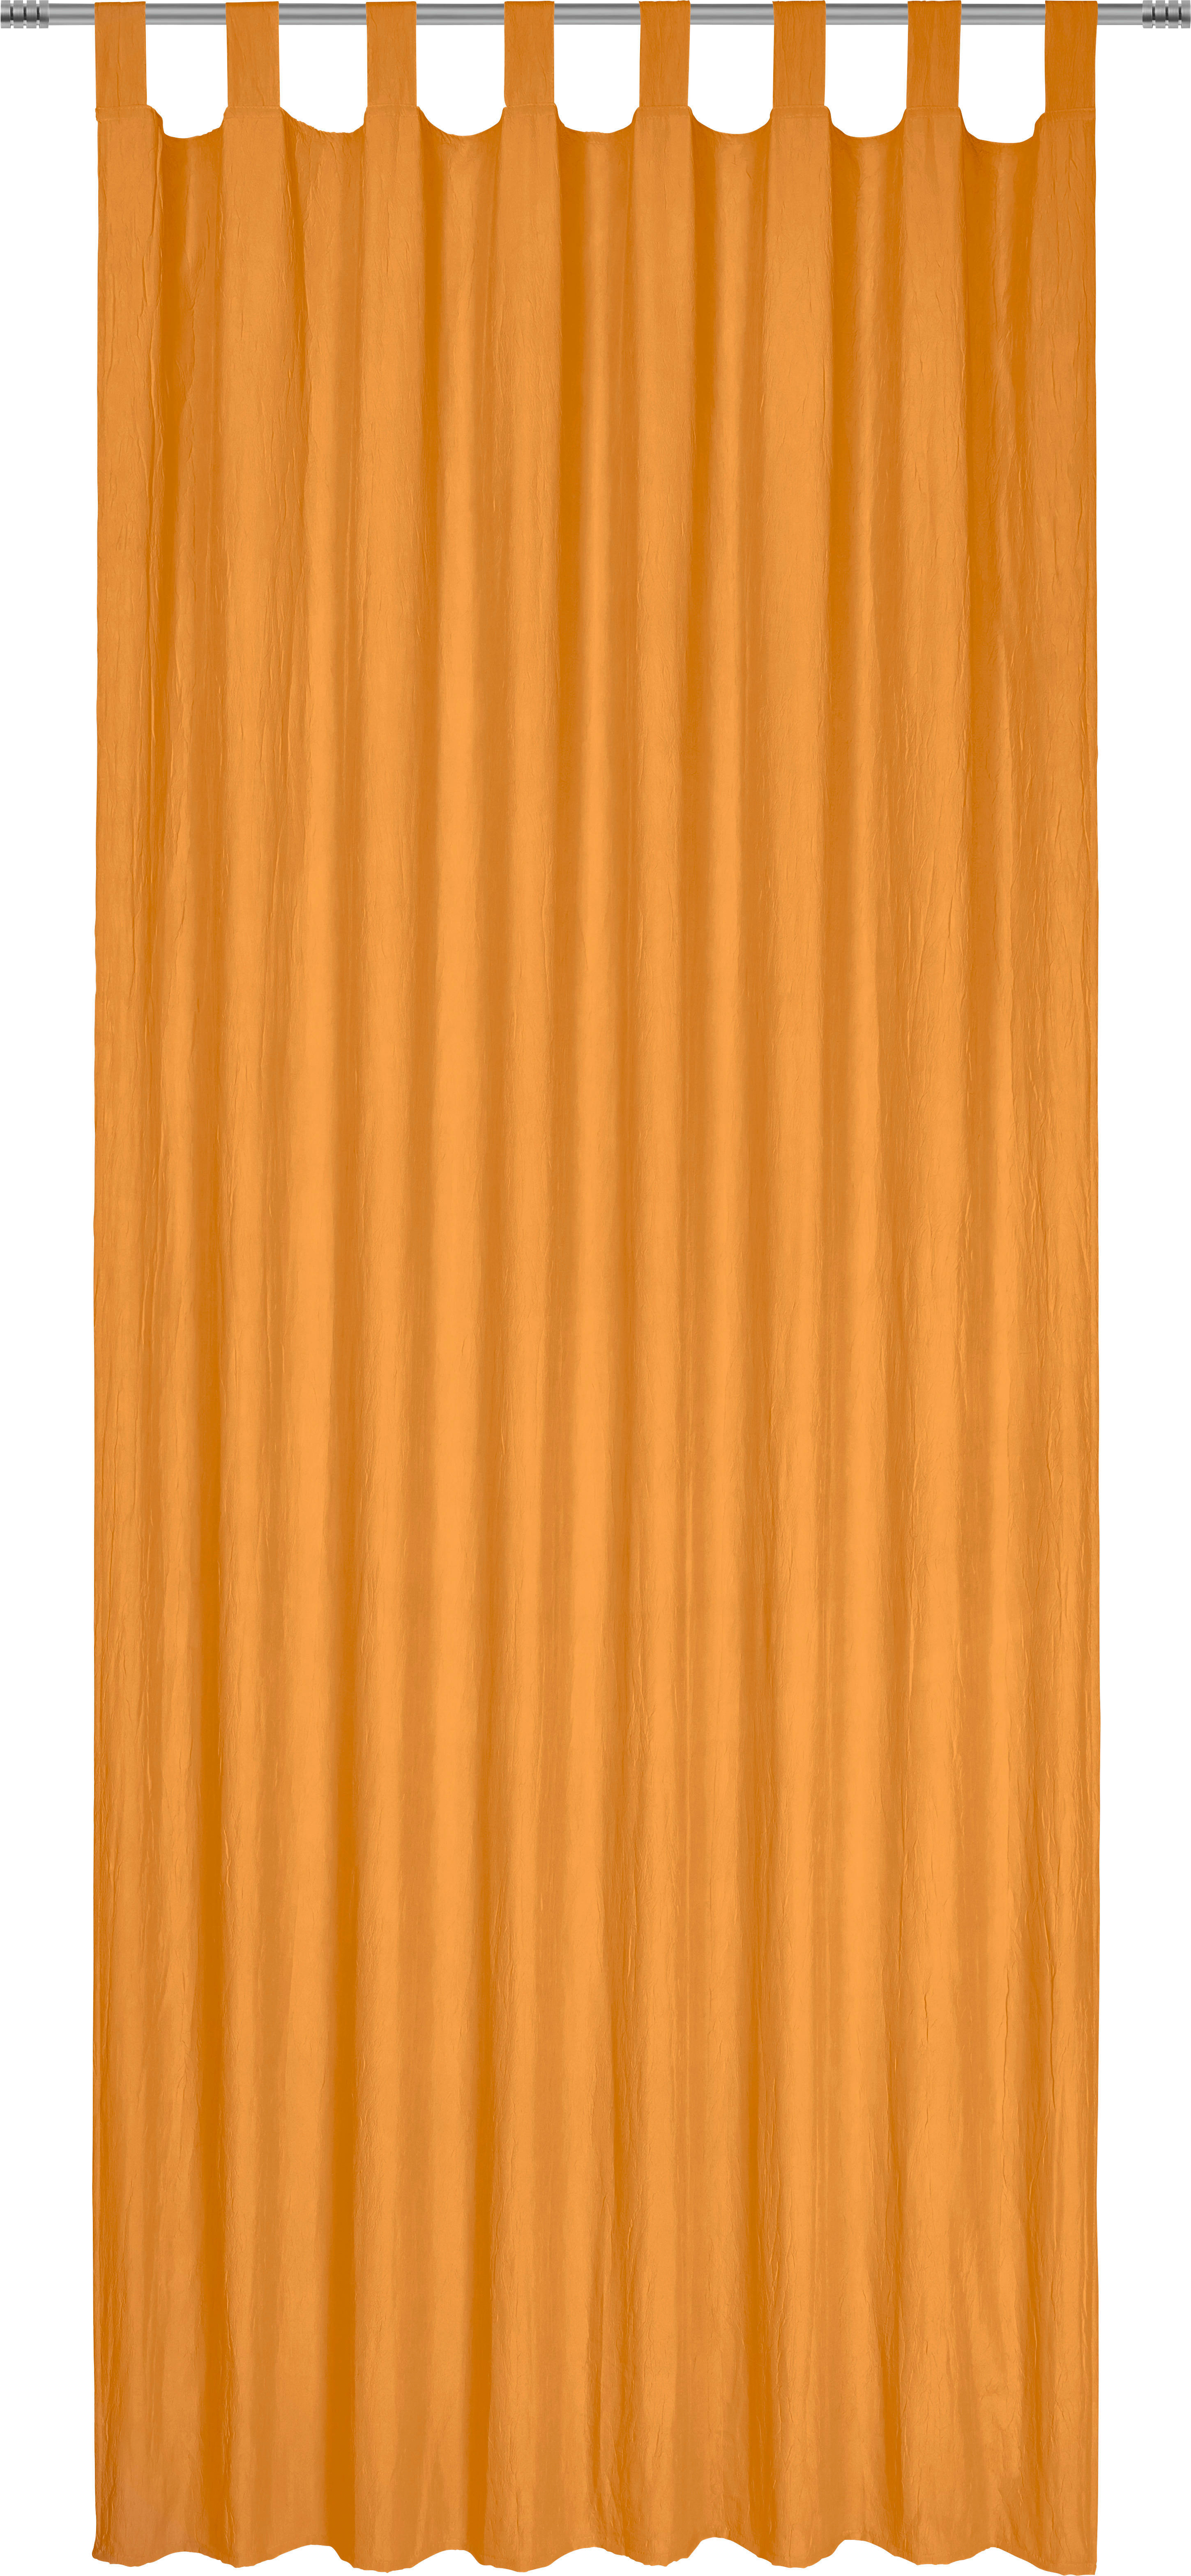 ZAVESA Z ZANKAMI POLO, ORANŽNA  pol prosojno  135/245 cm   - oranžna, Konvencionalno, tekstil (135/245cm) - Boxxx